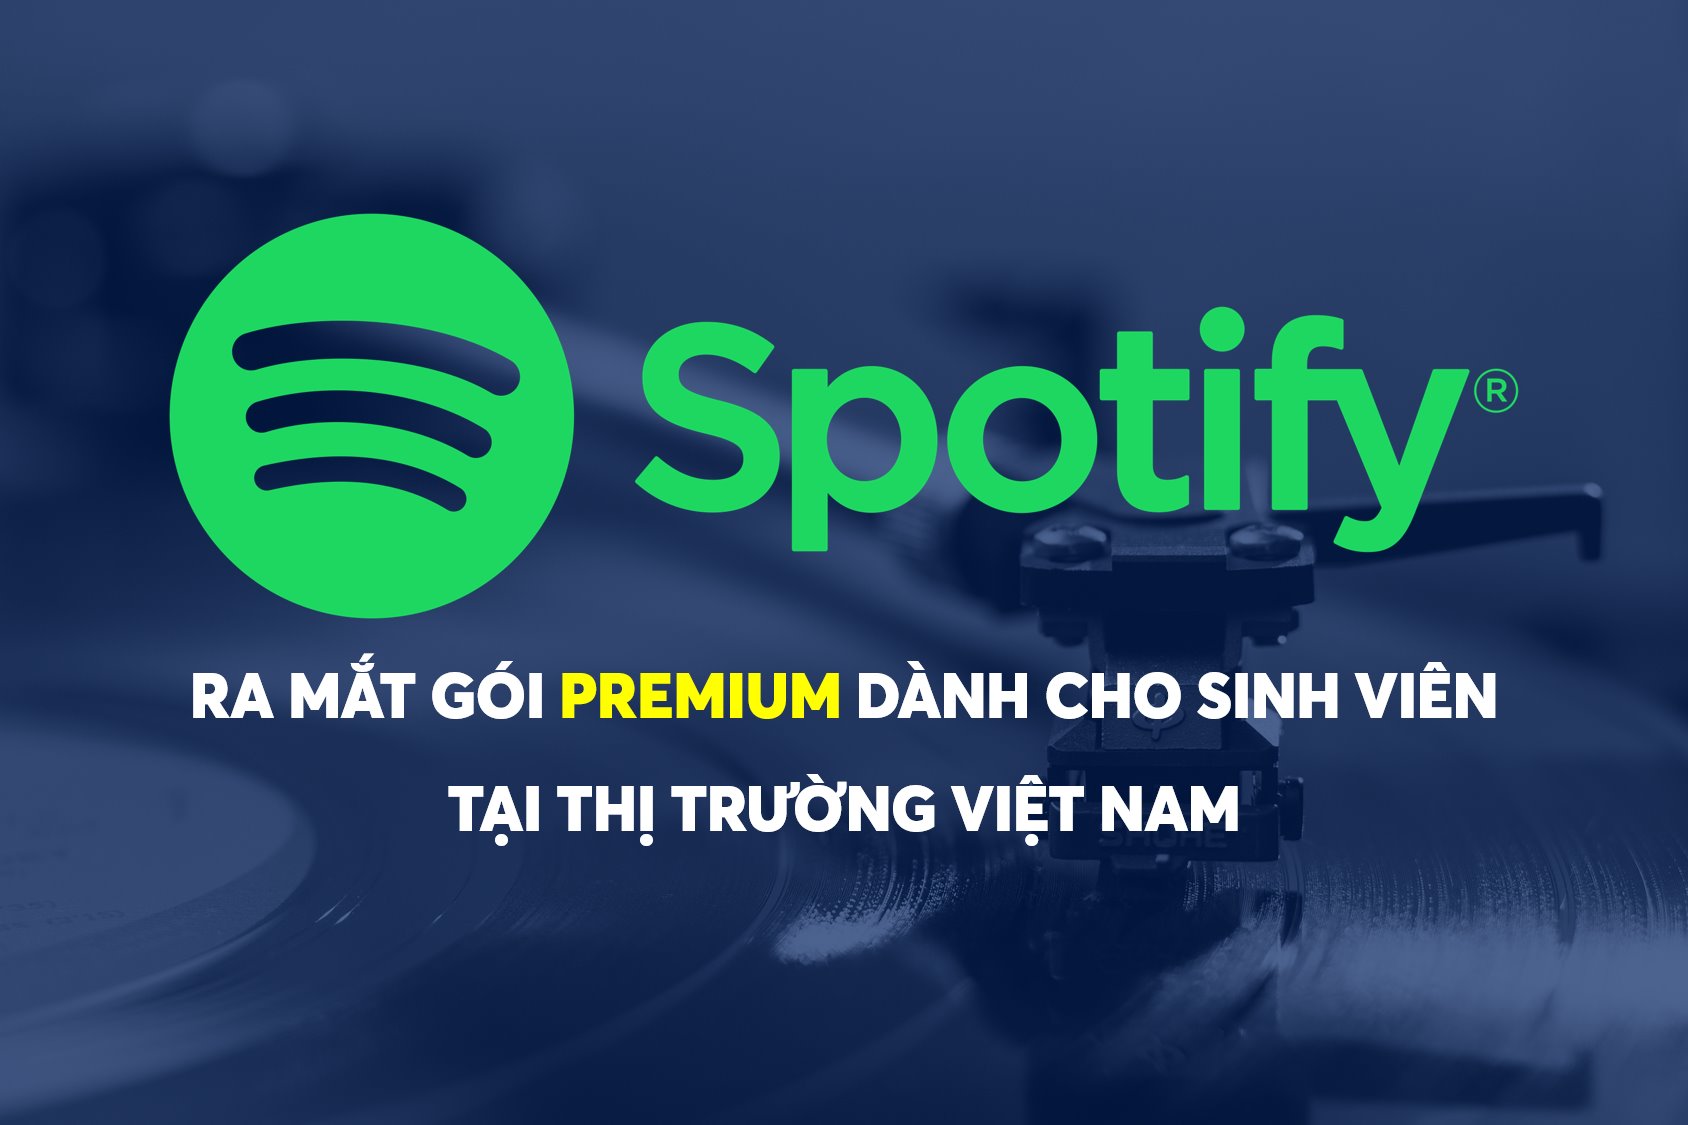 Spotify ra mắt gói Premium dành cho sinh viên tại thị trường Việt Nam